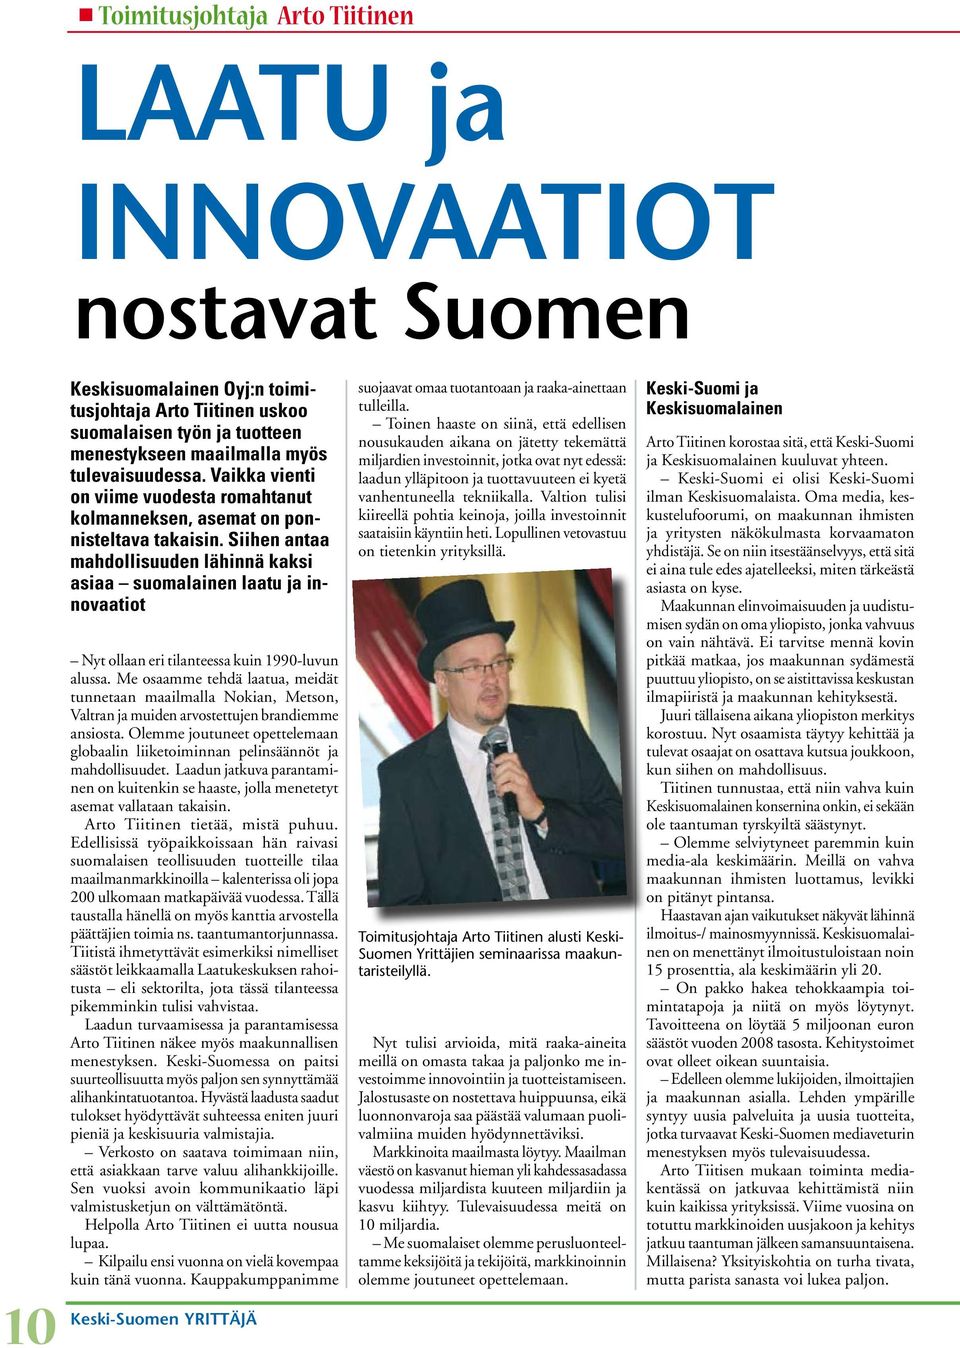 Siihen antaa mahdollisuuden lähinnä kaksi asiaa suomalainen laatu ja innovaatiot Nyt ollaan eri tilanteessa kuin 1990-luvun alussa.